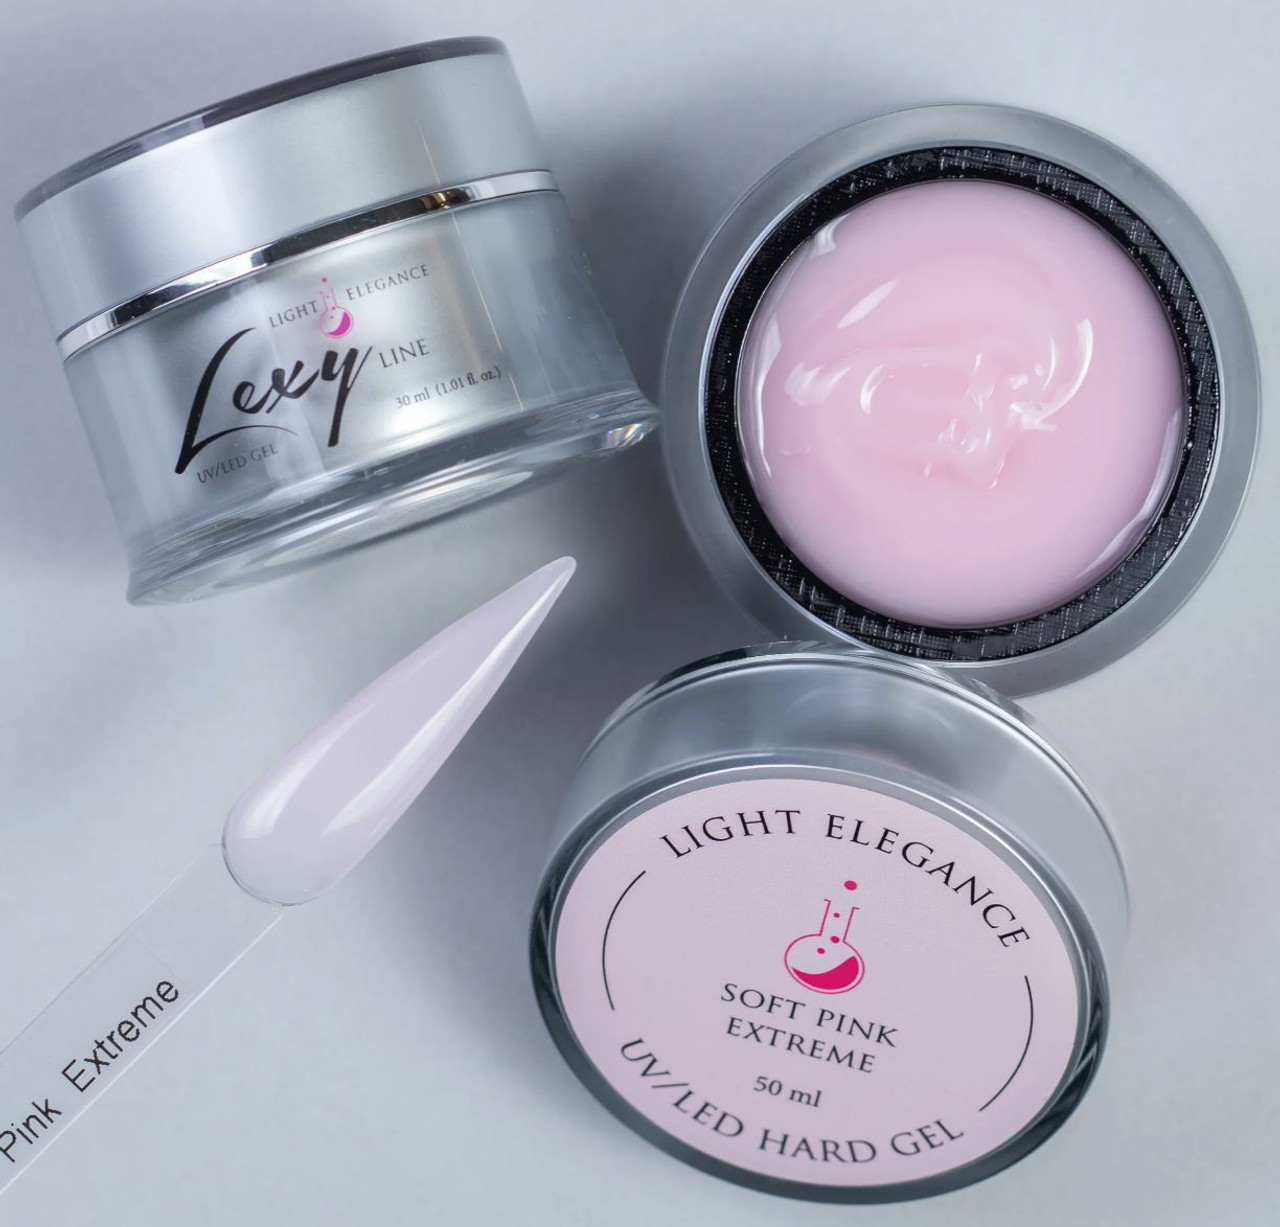 Light Elegance Lexy Line UV/LED Building Gel Soft Pink Extreme - 8 mL